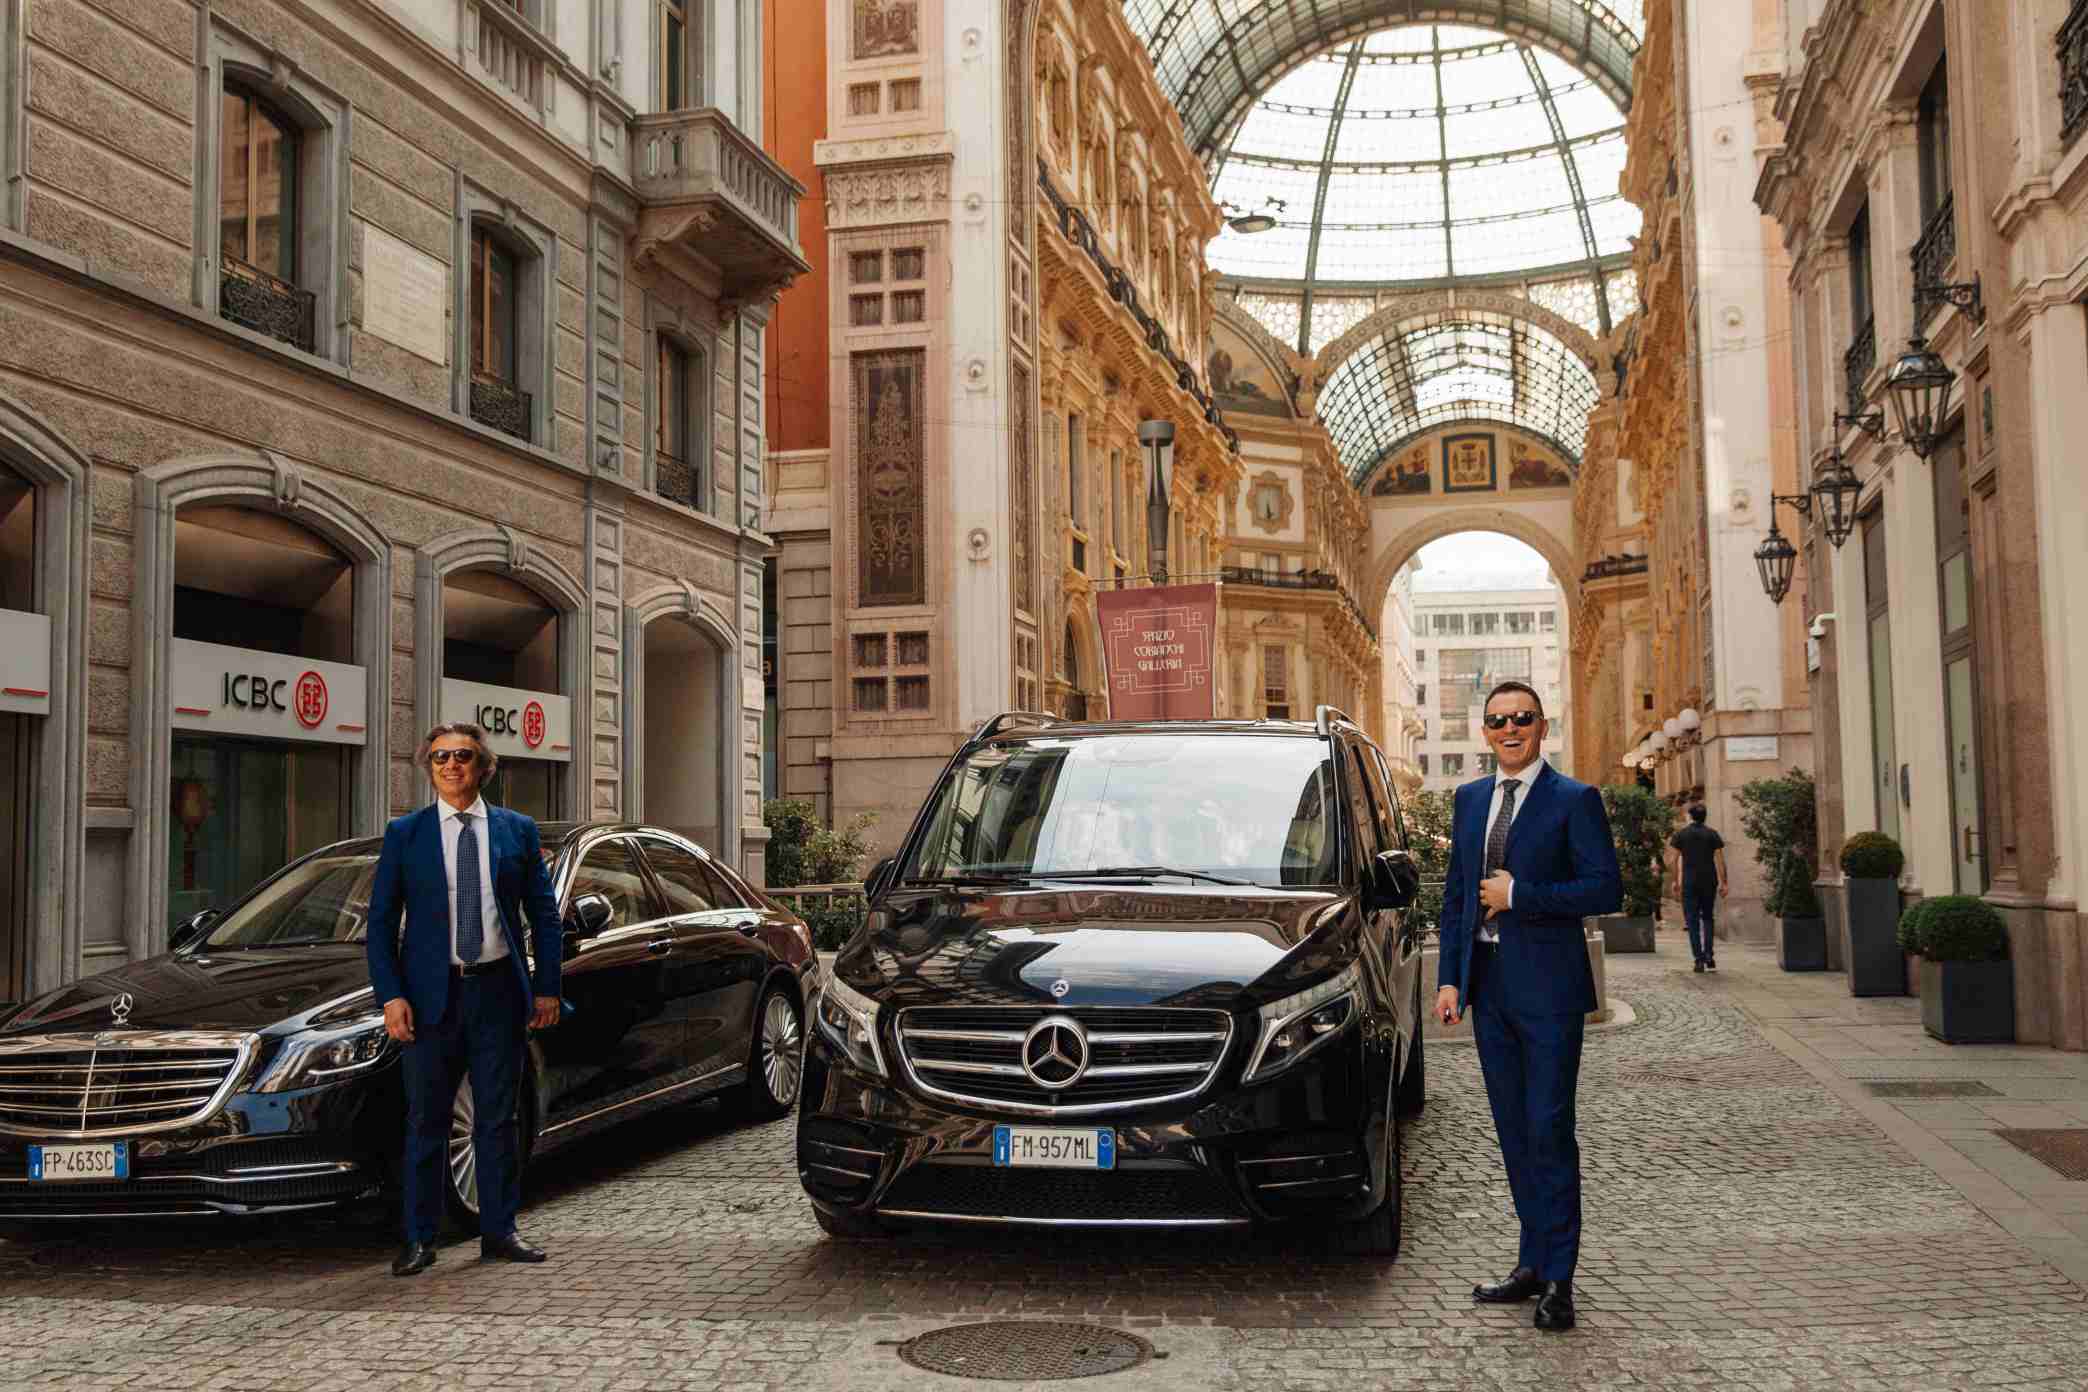 Chauffeur Driven Luxury Car Rental Rome